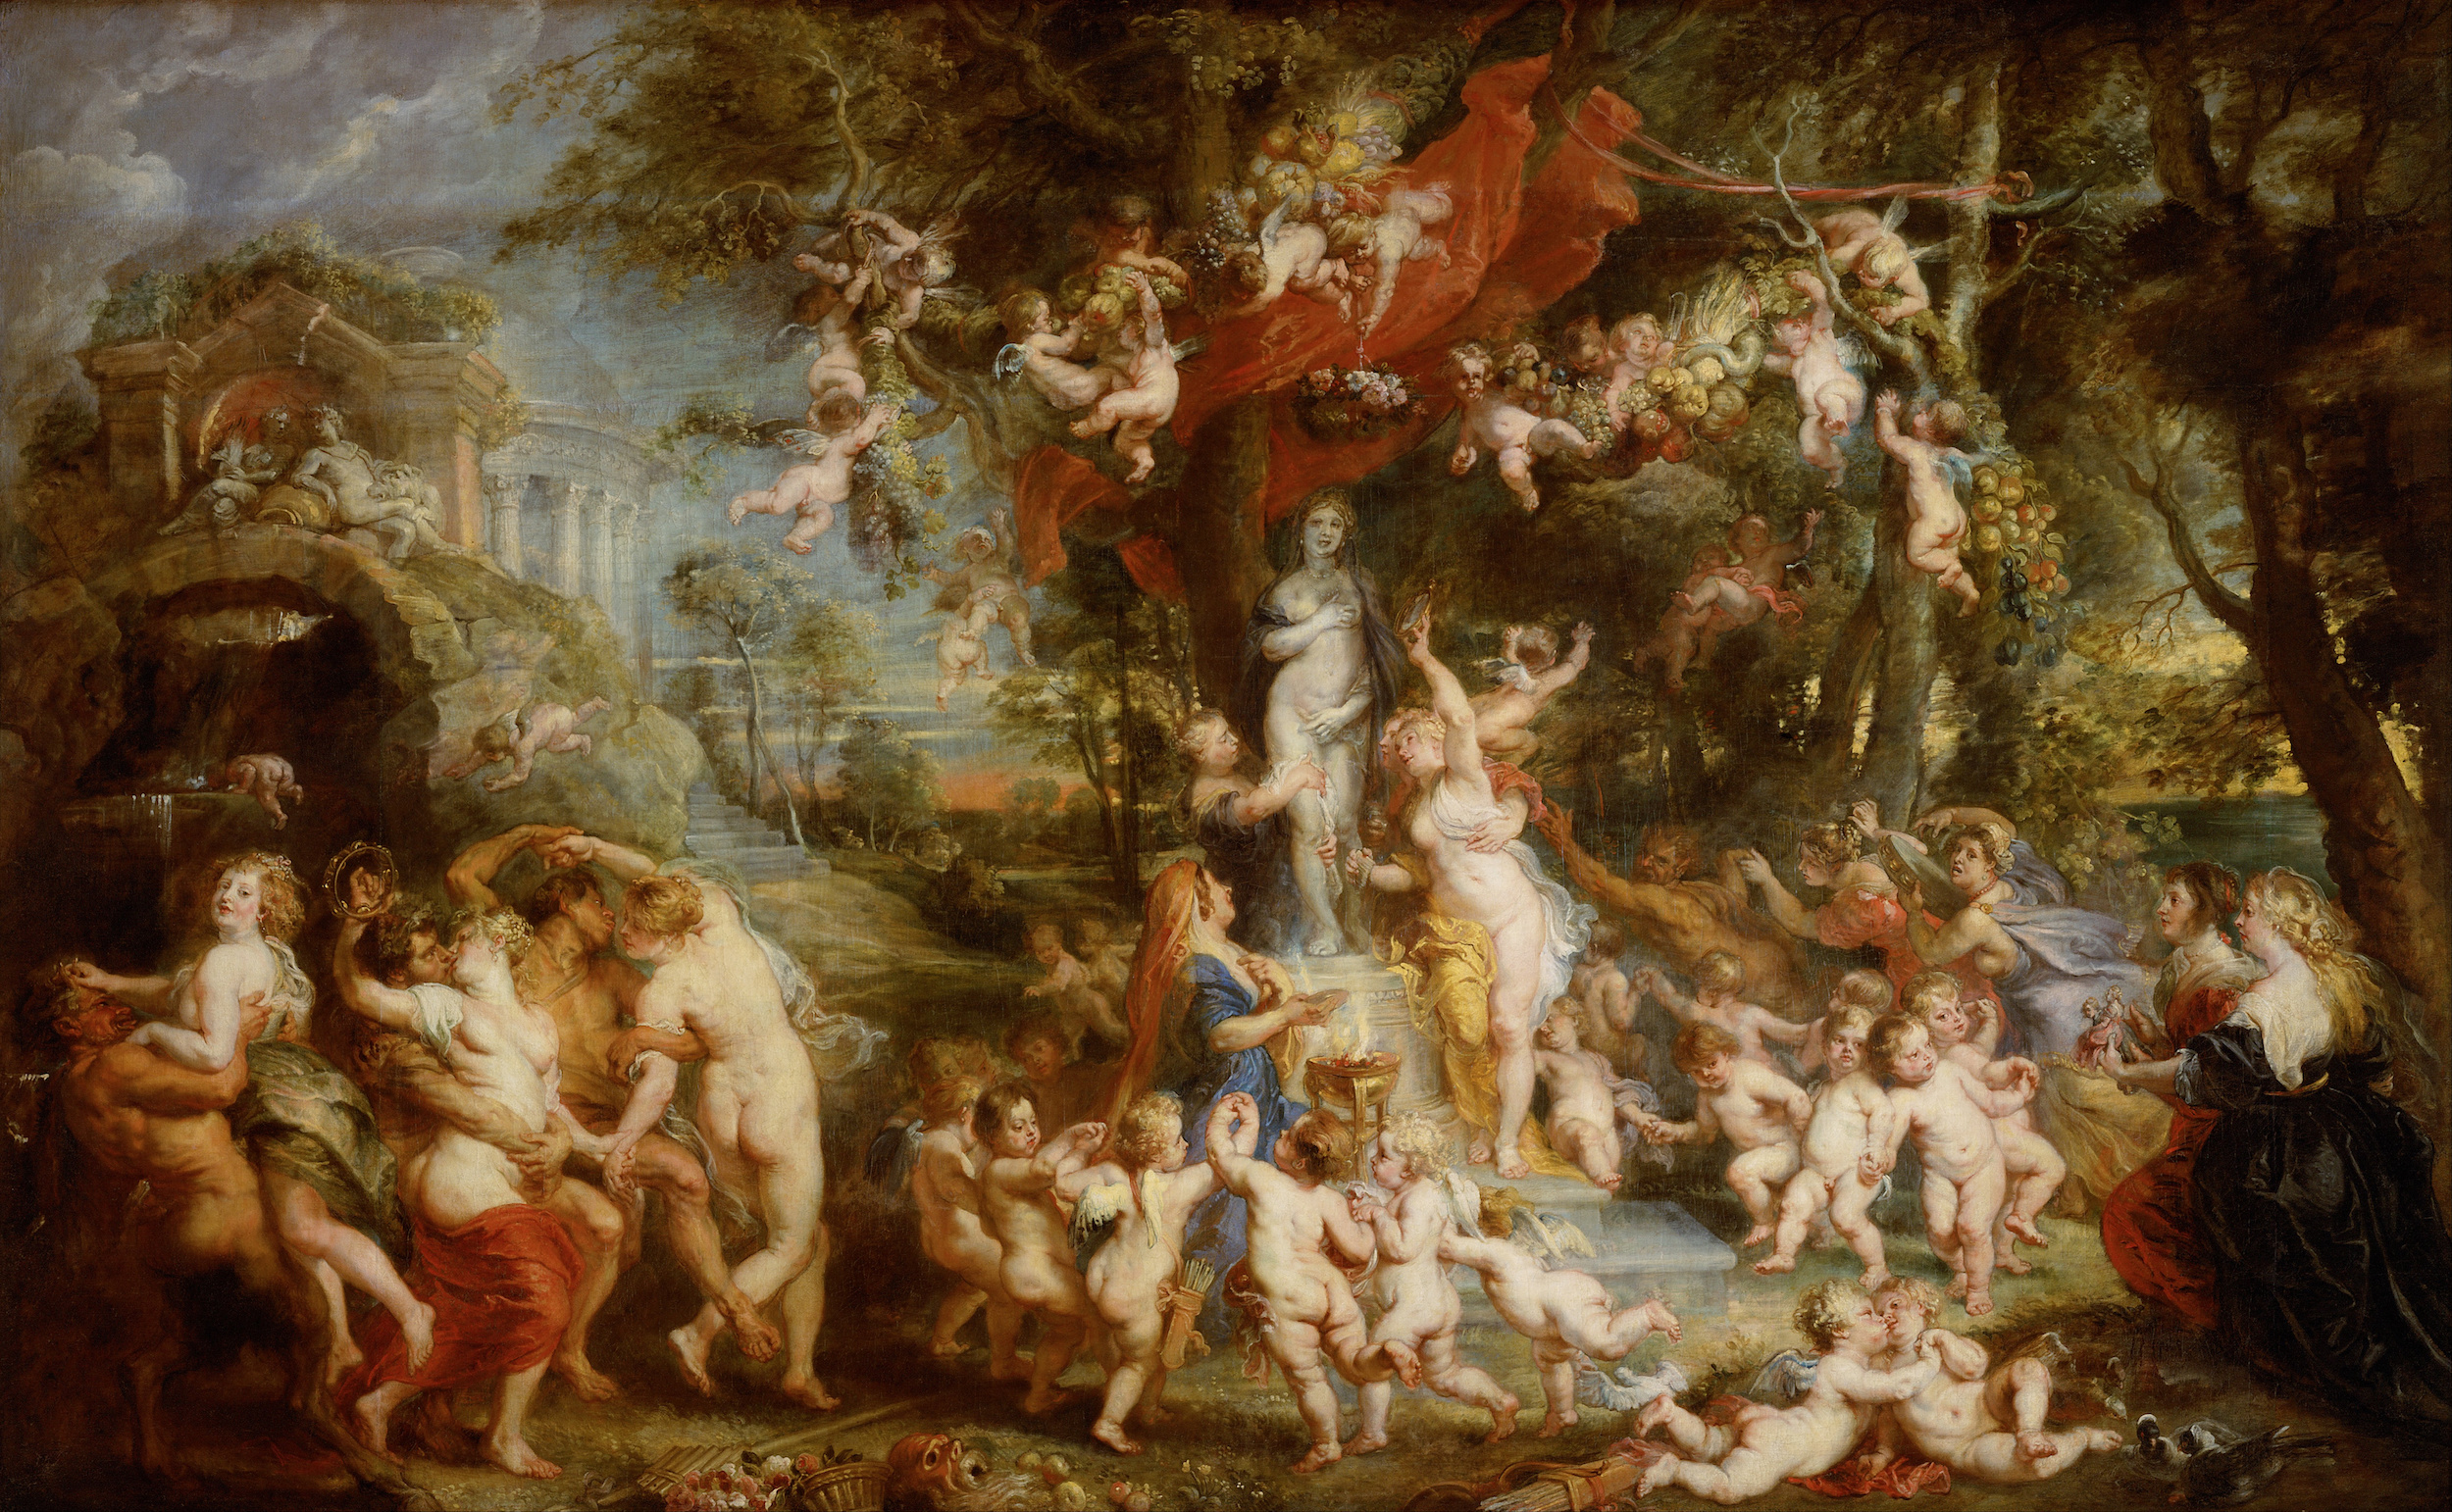 Het feest van Venus by Peter Paul Rubens - ca. 1636/37 - 350 x 217 cm Kunsthistorisches Museum